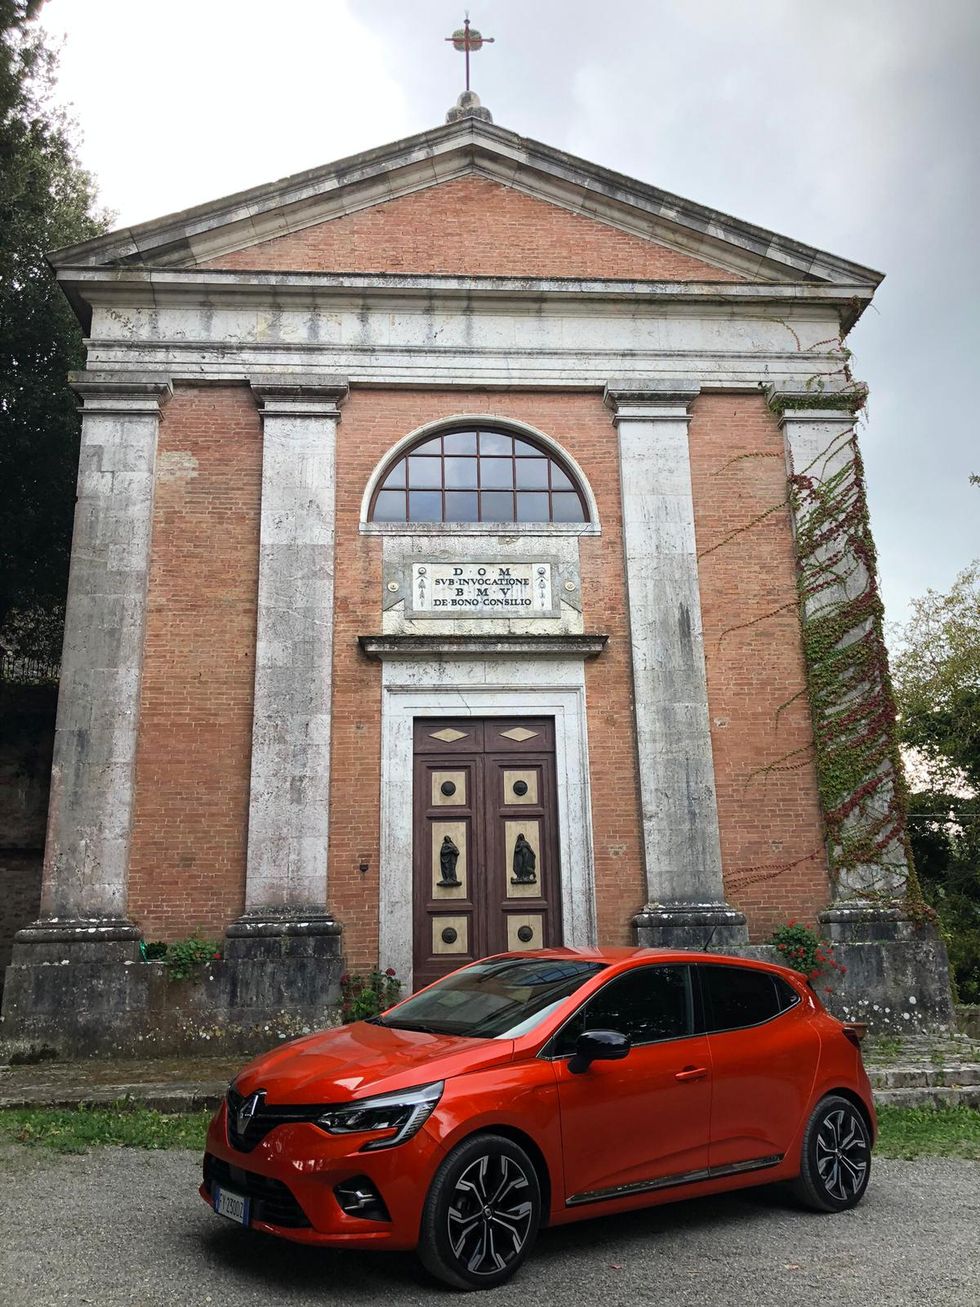 La Clio 2019 in versione rossa su una strada toscana.